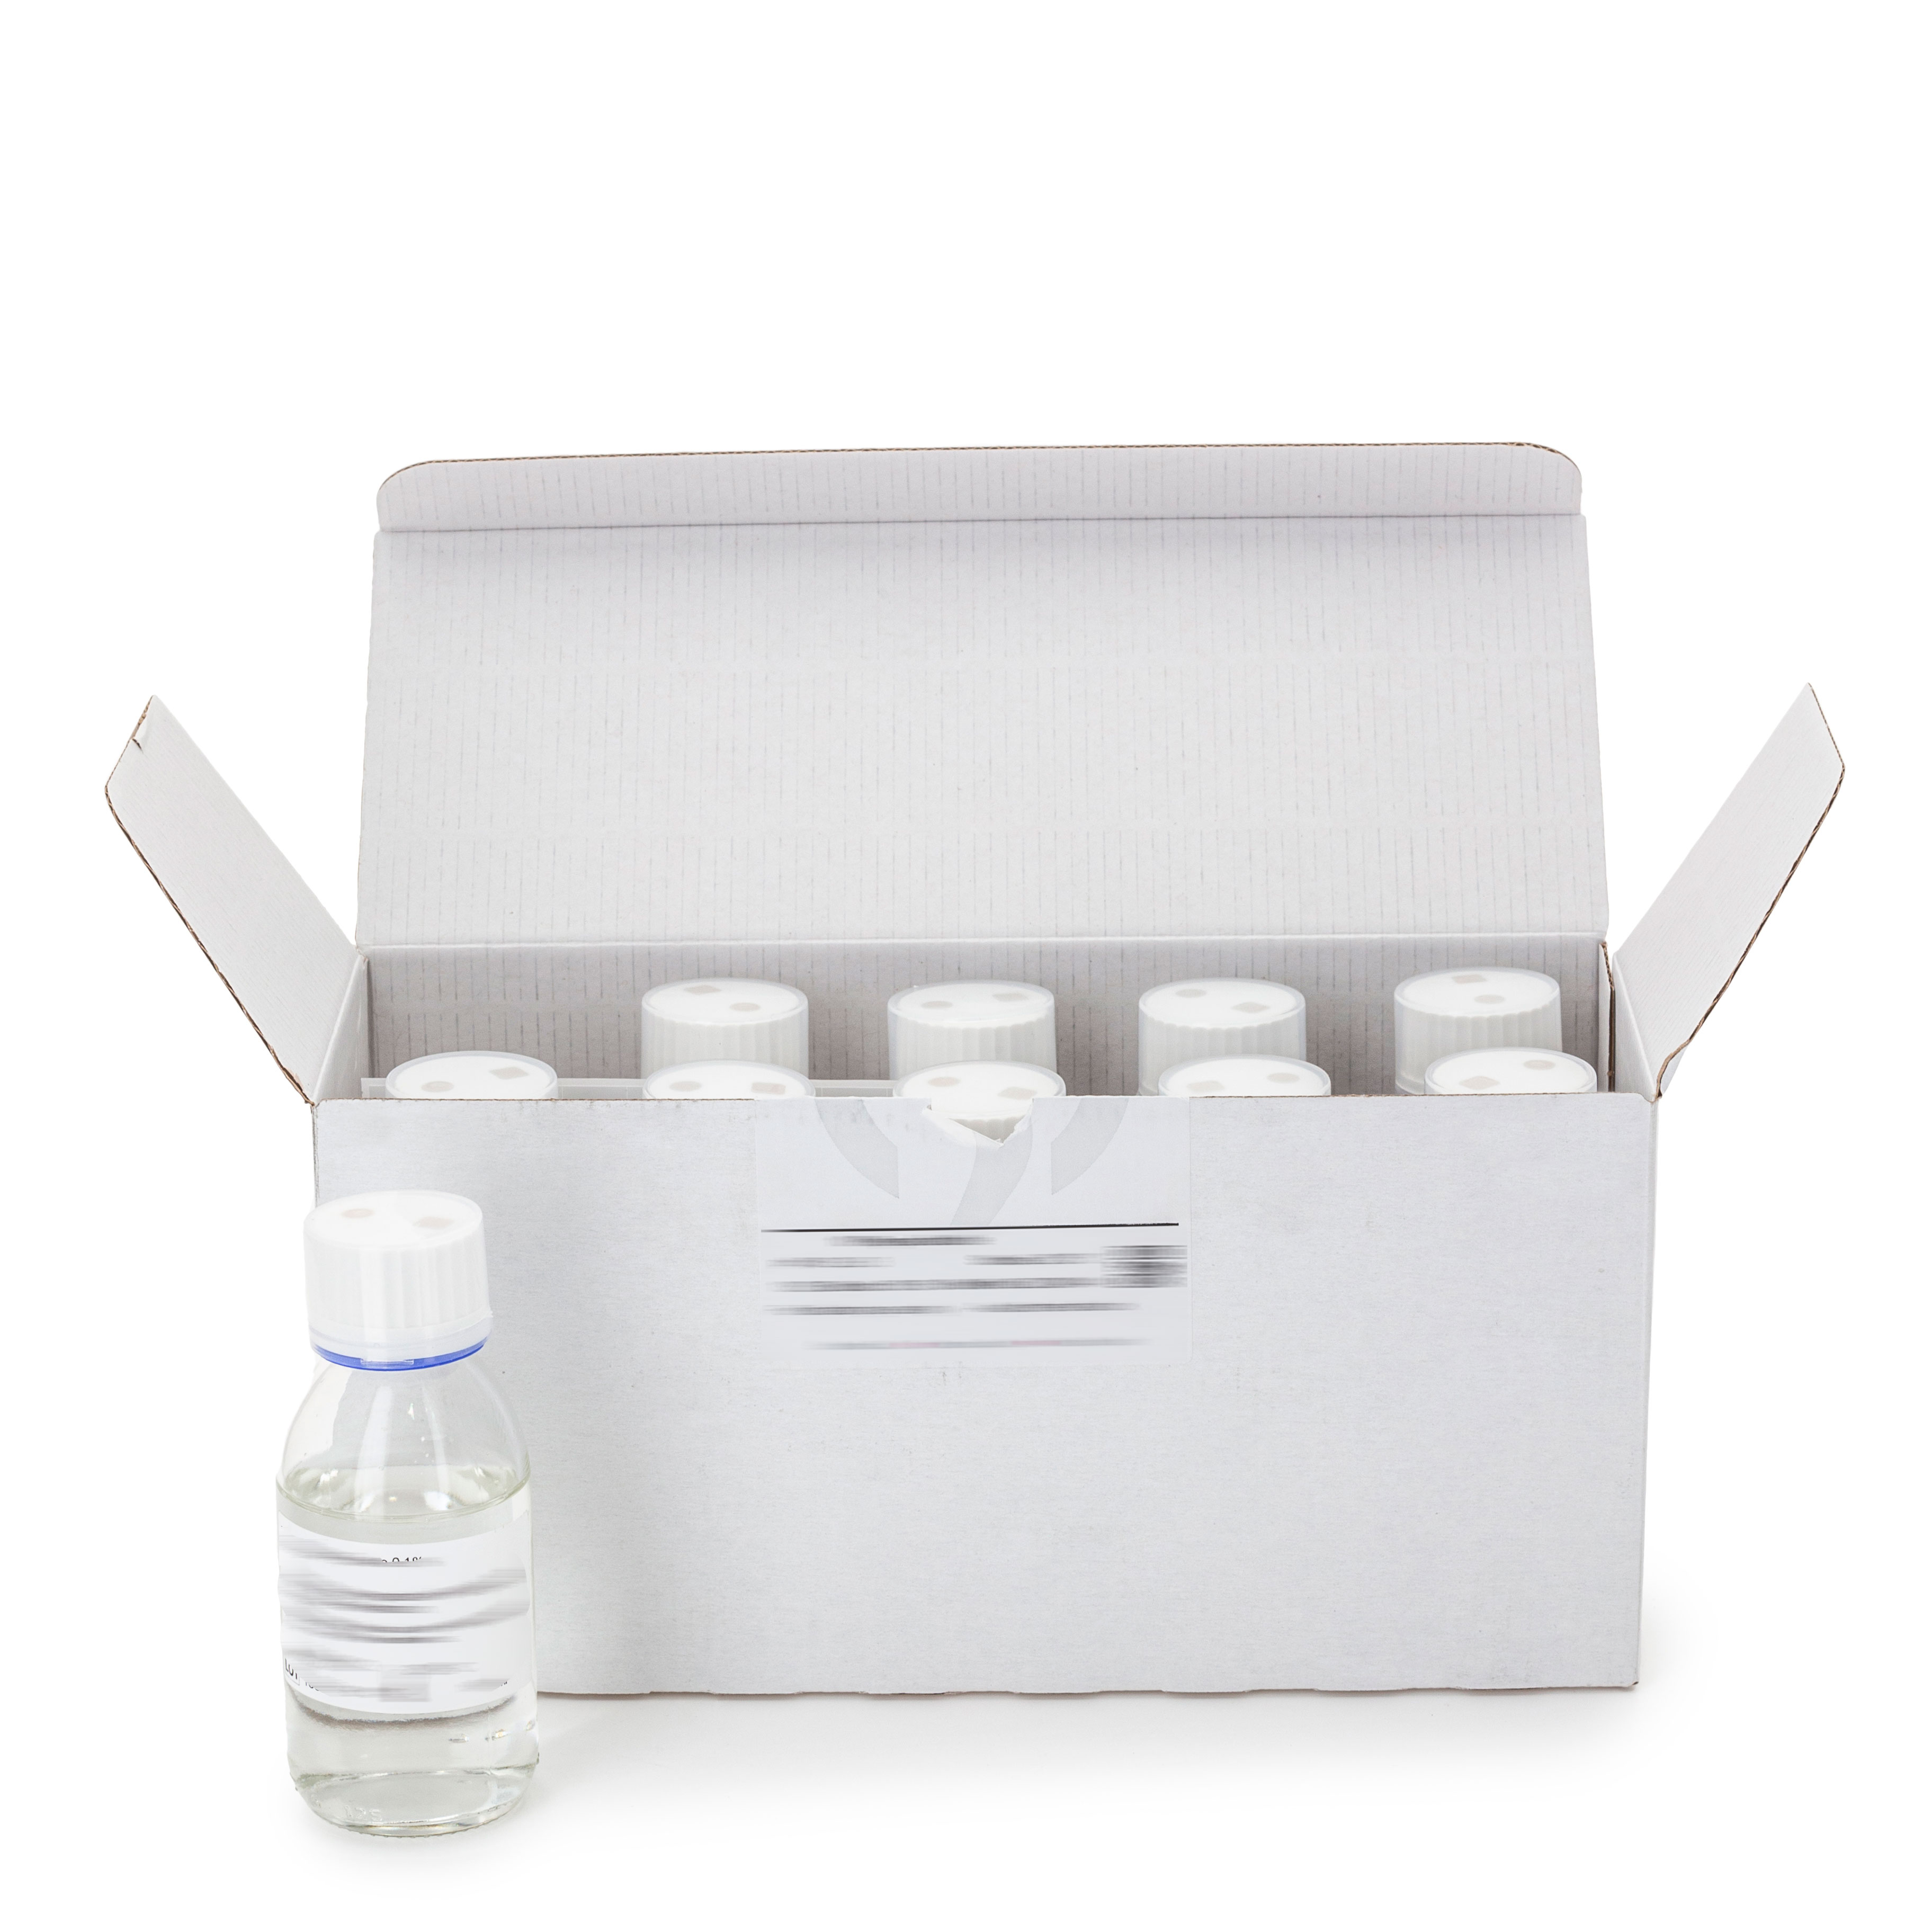 Eugon LT Modified Broth - 100 ml. Medio líquido para el enriquecimiento de bacterias aeróbicas y E. coli, en productos cosméticos en presencia o ausencia de conservantes.